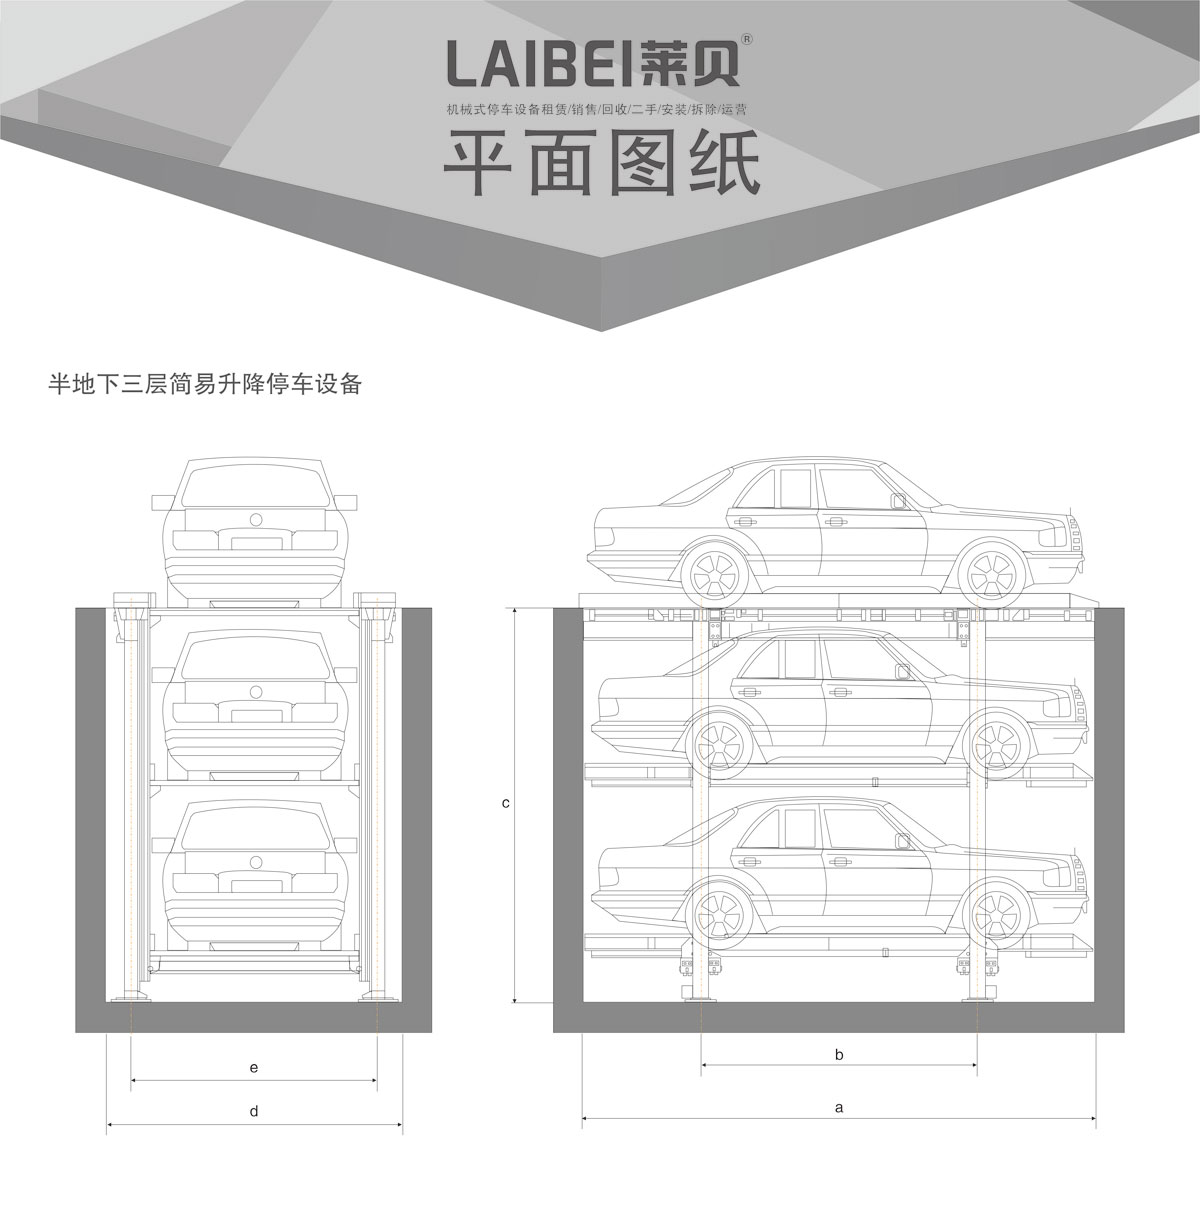 贵阳莱贝PJS2-D1地坑简易升降机械式立体停车库平面图纸.jpg